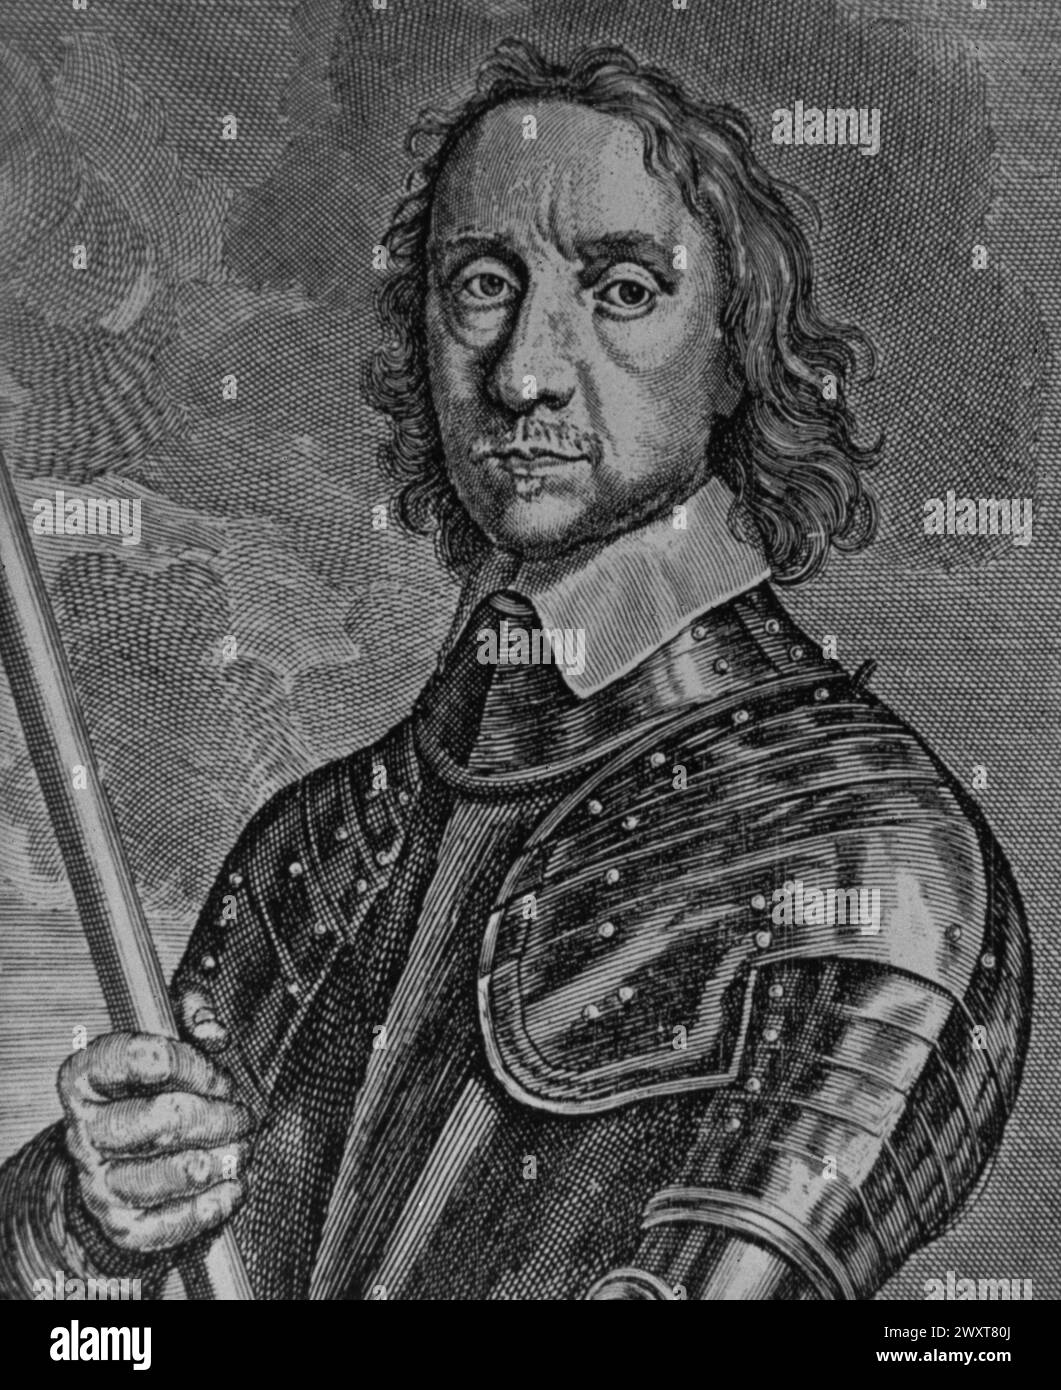 Porträt von Oliver Cromwell, Lord Protector of England, Stich nach einem Gemälde von Conrad Woumans, England 17. Jahrhundert Stockfoto